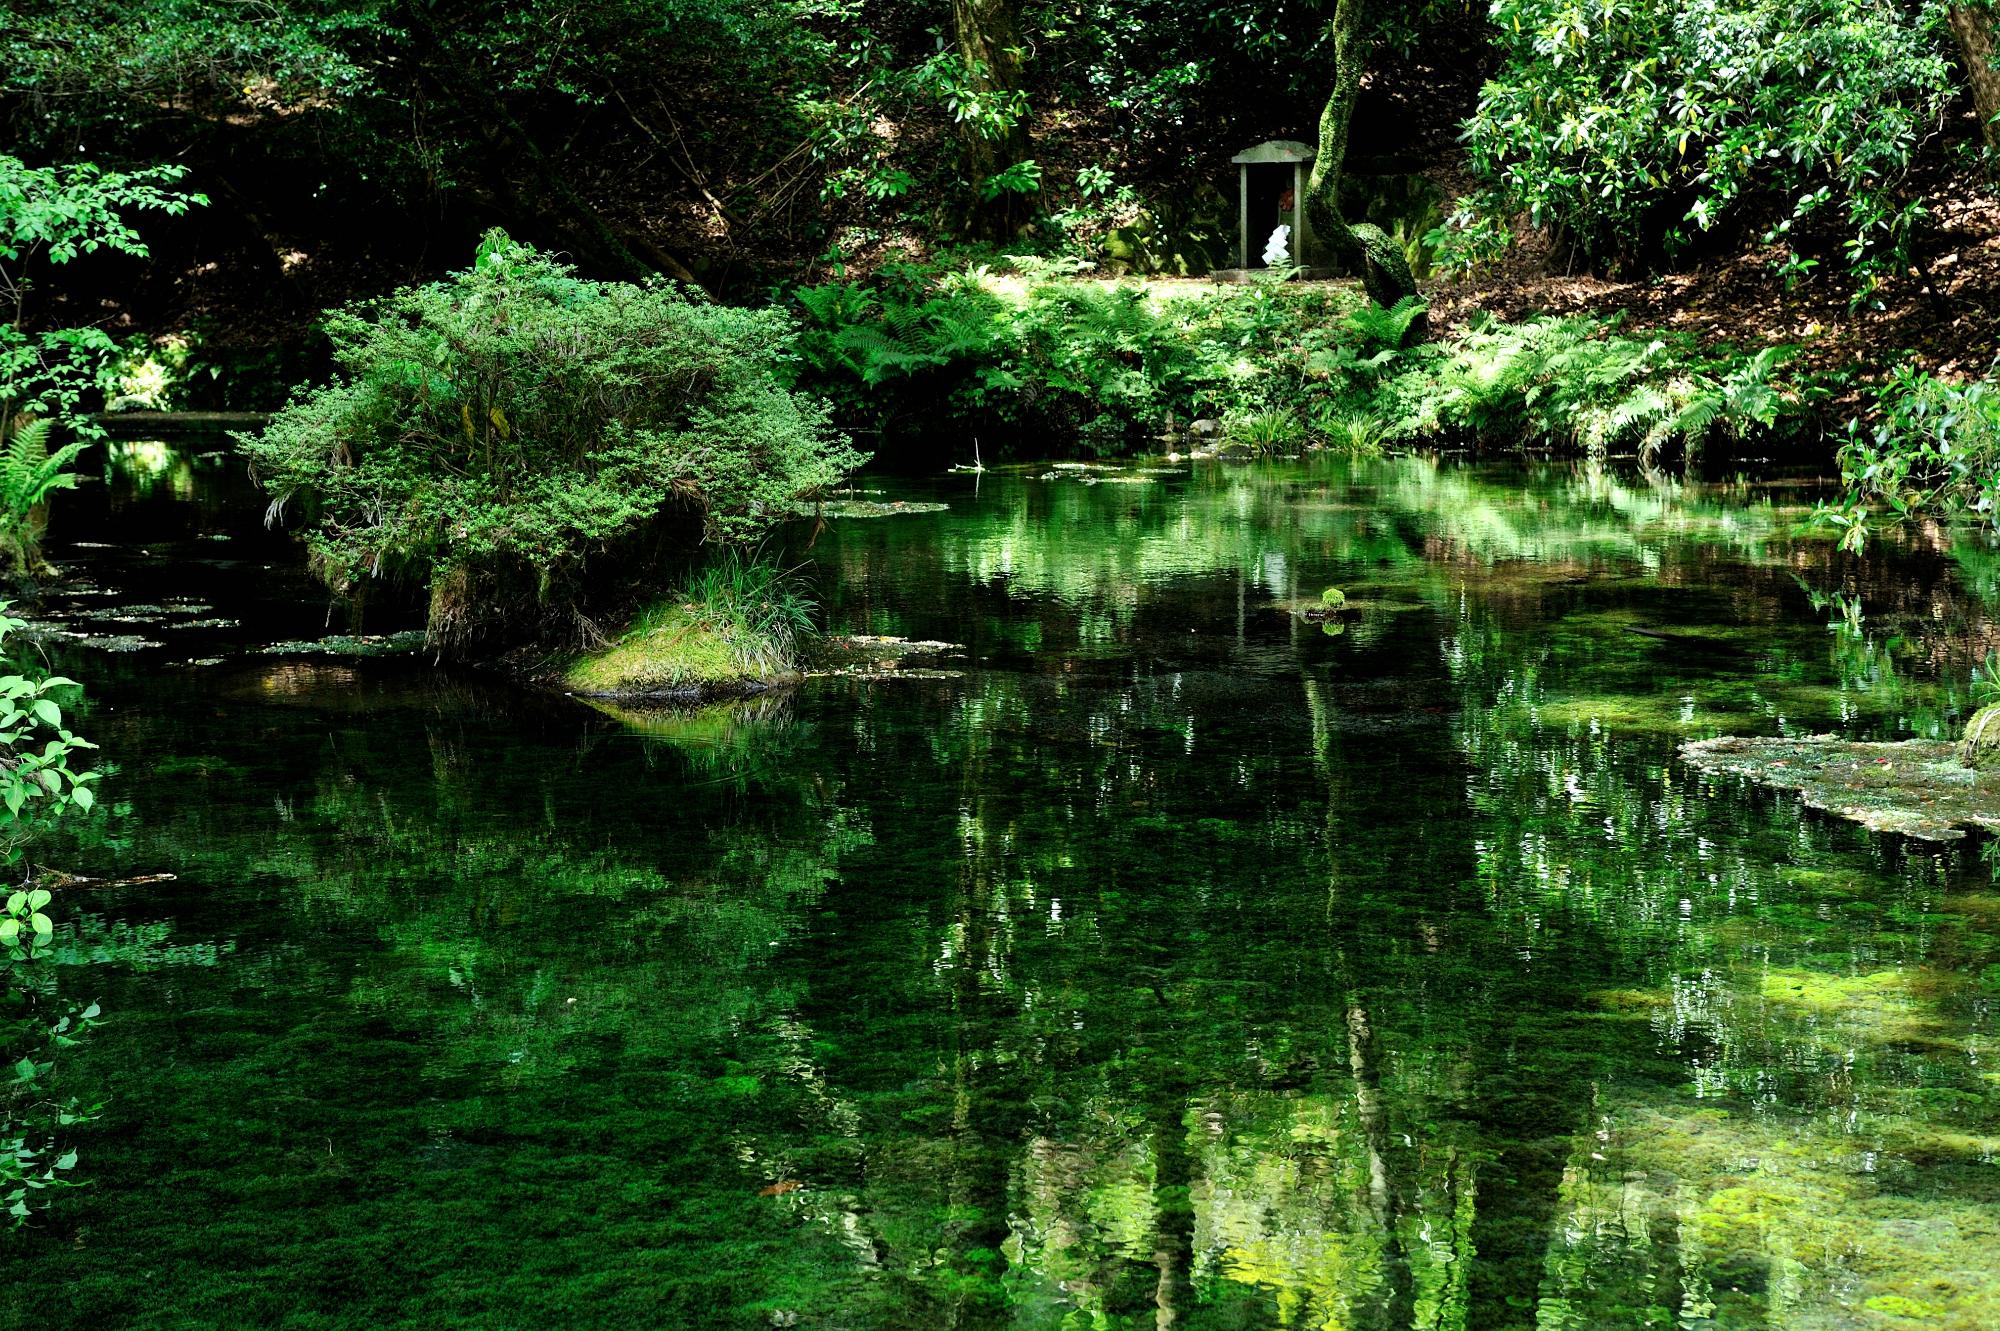 池山水源の湧水と緑が映り込む鏡面